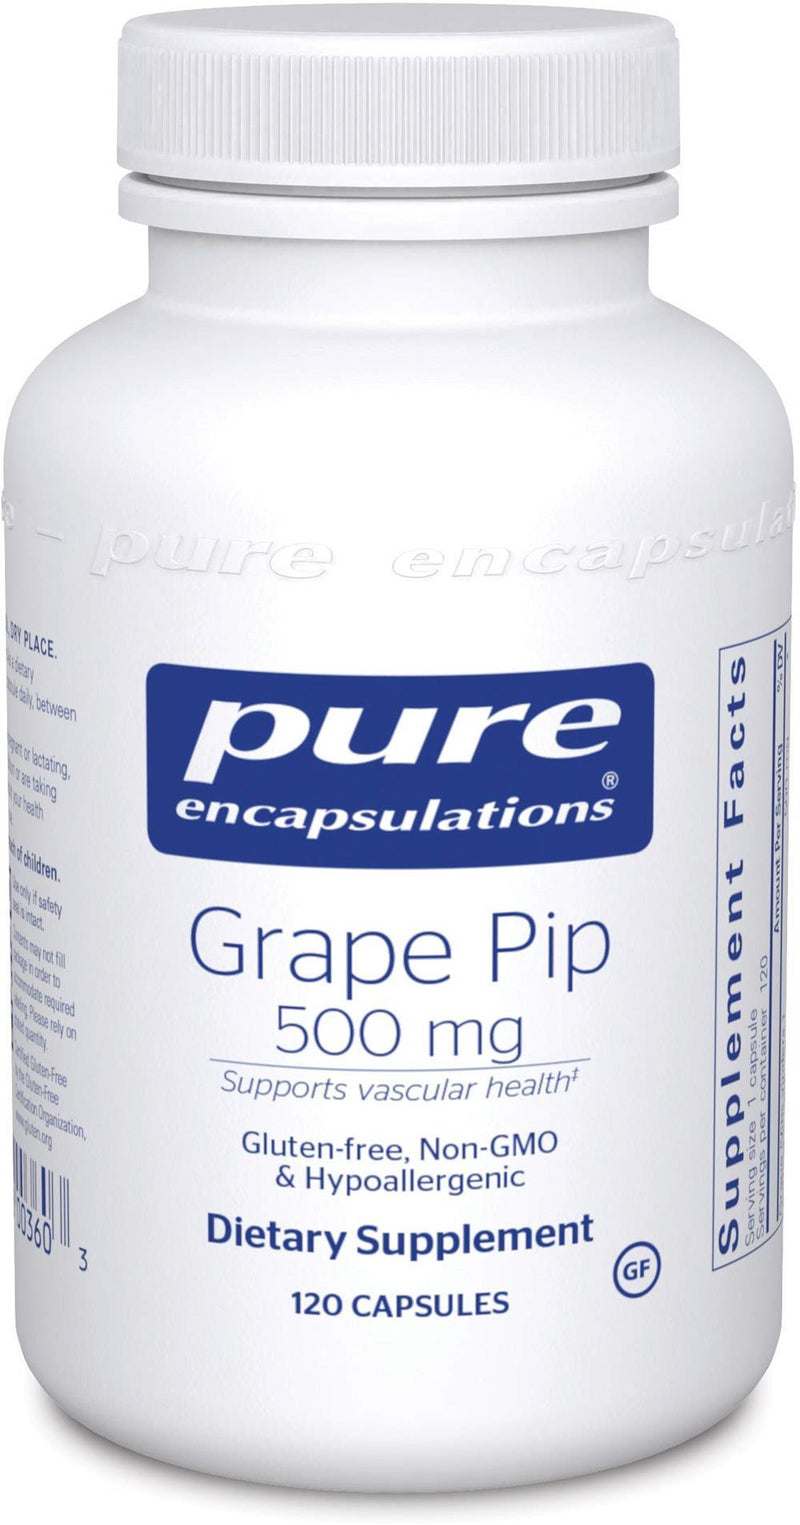 Pure Encapsulations Grape Pip 500 mg -- 120 Capsules